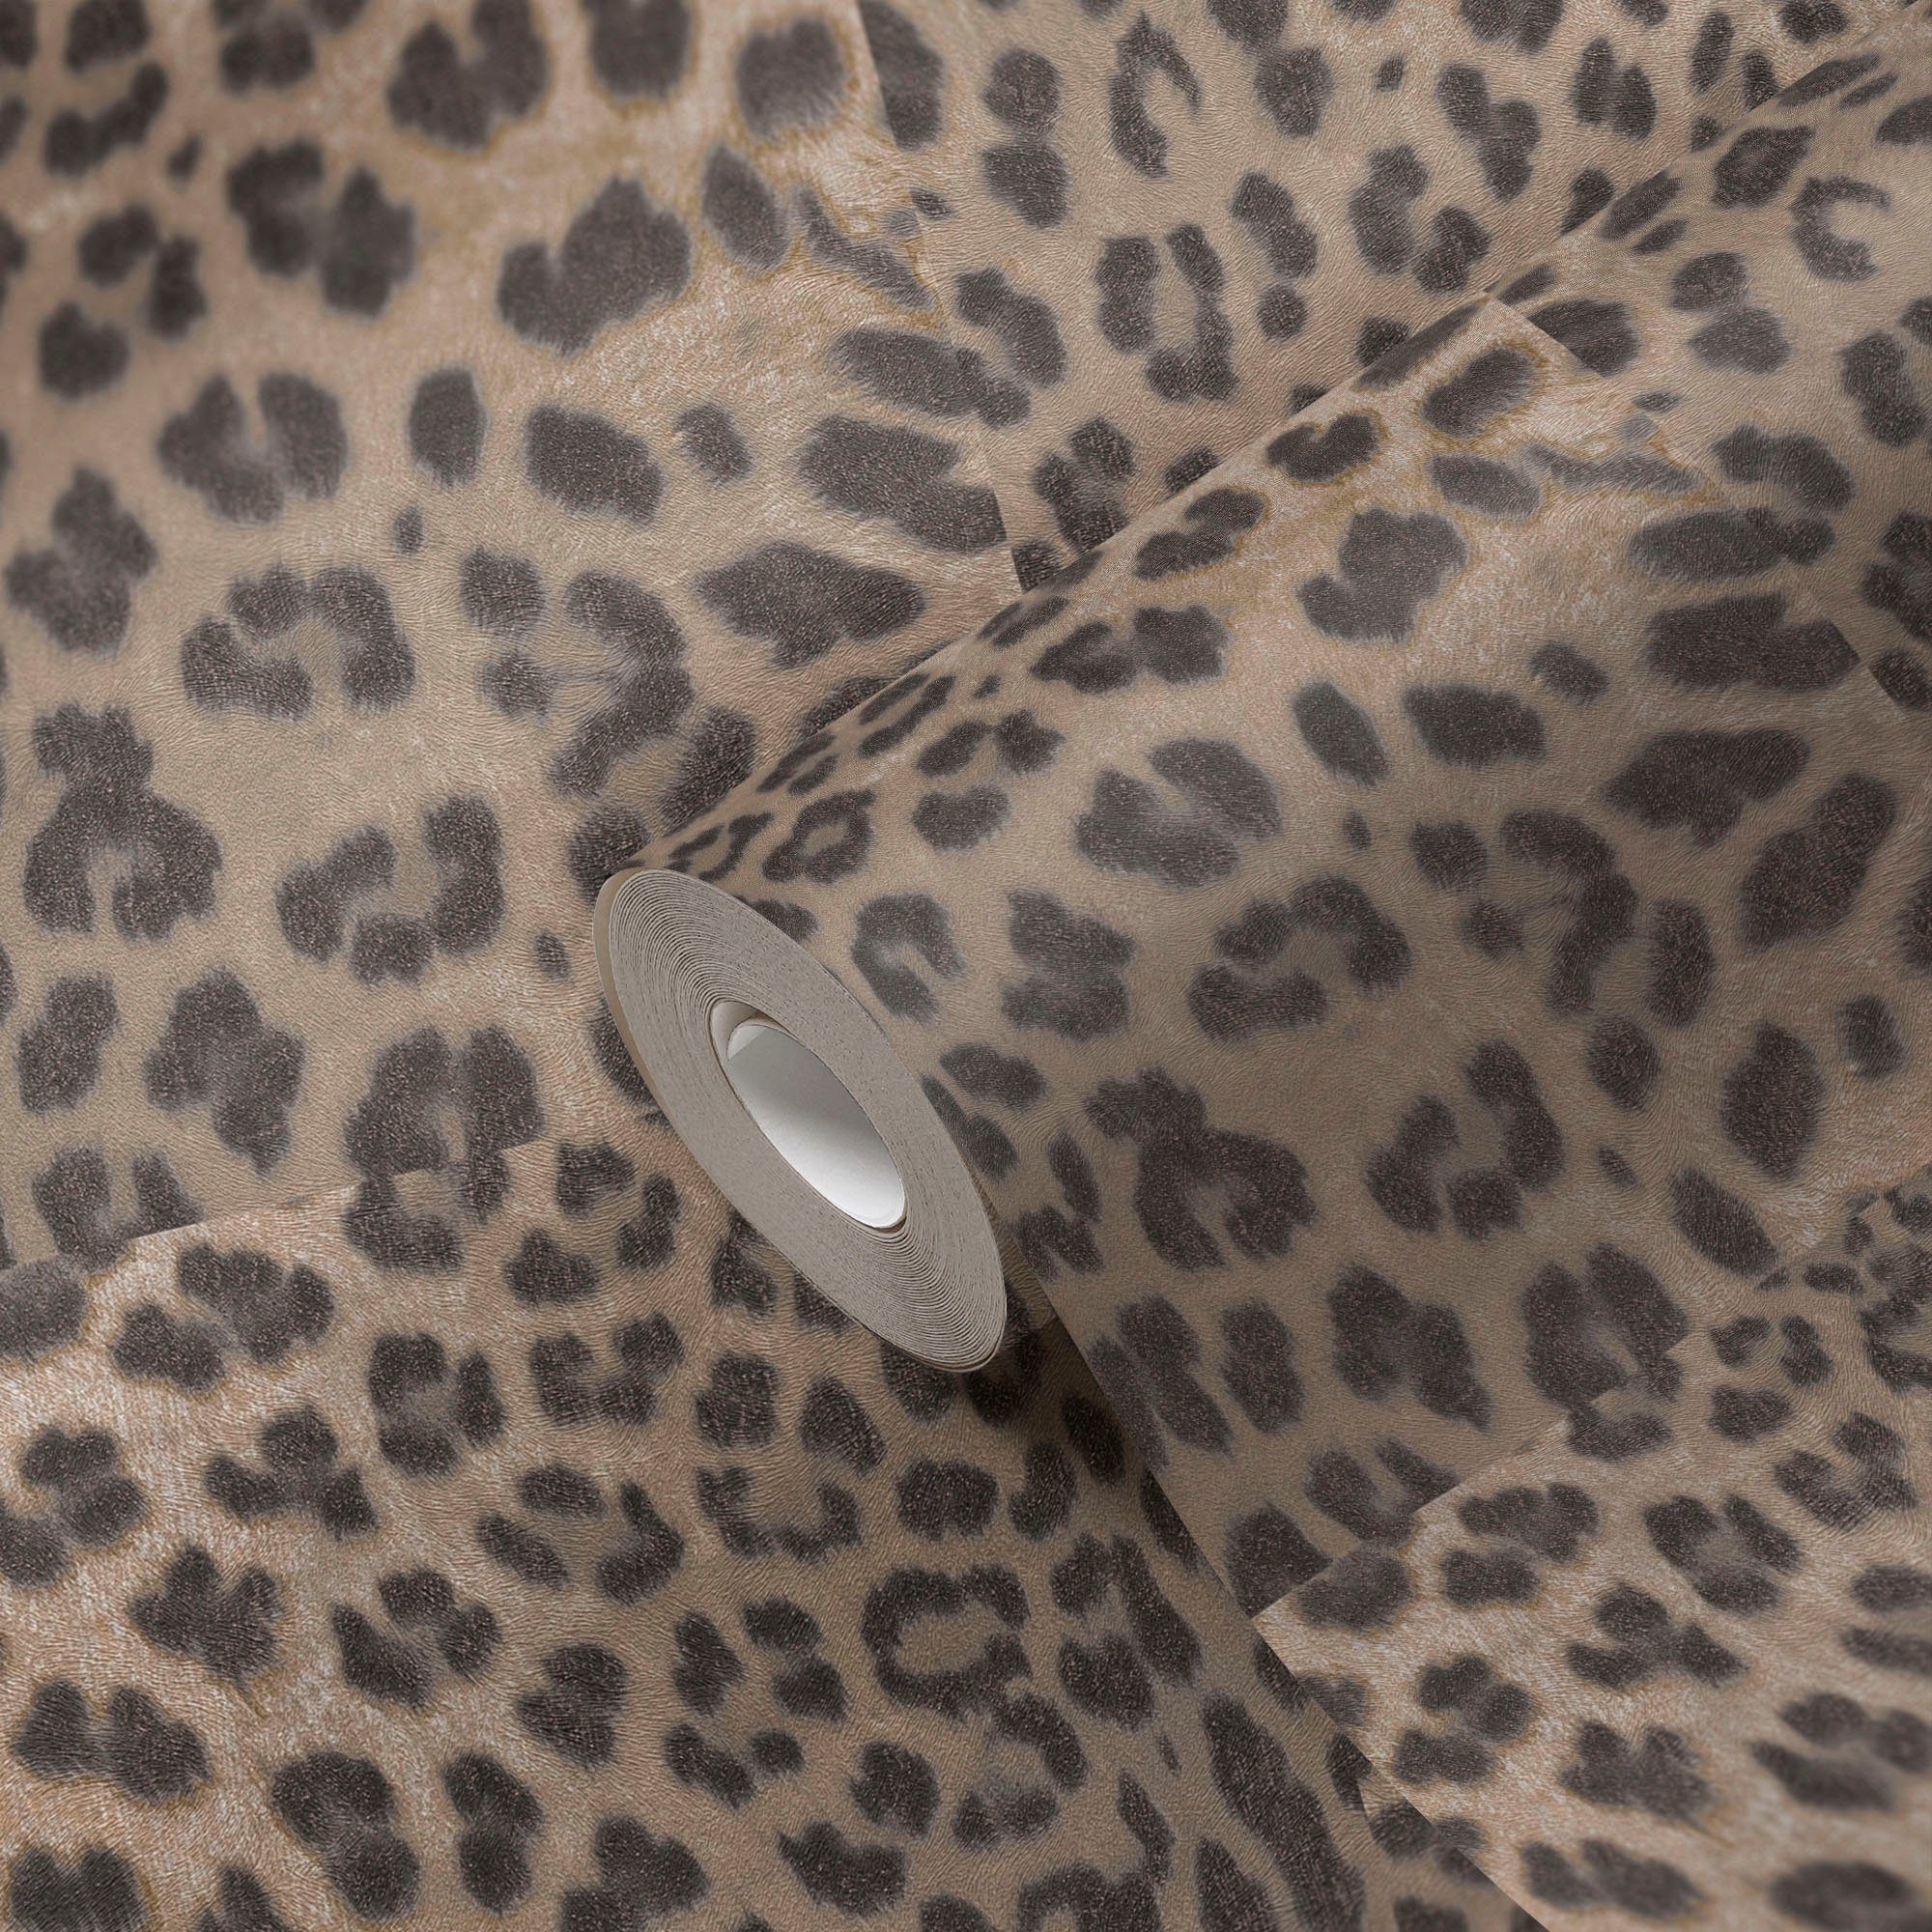 Leopardenmuster Desert gemustert, strukturiert, braun/beige Fellimitat, Tapete Vliestapete living animal print, Lodge, walls